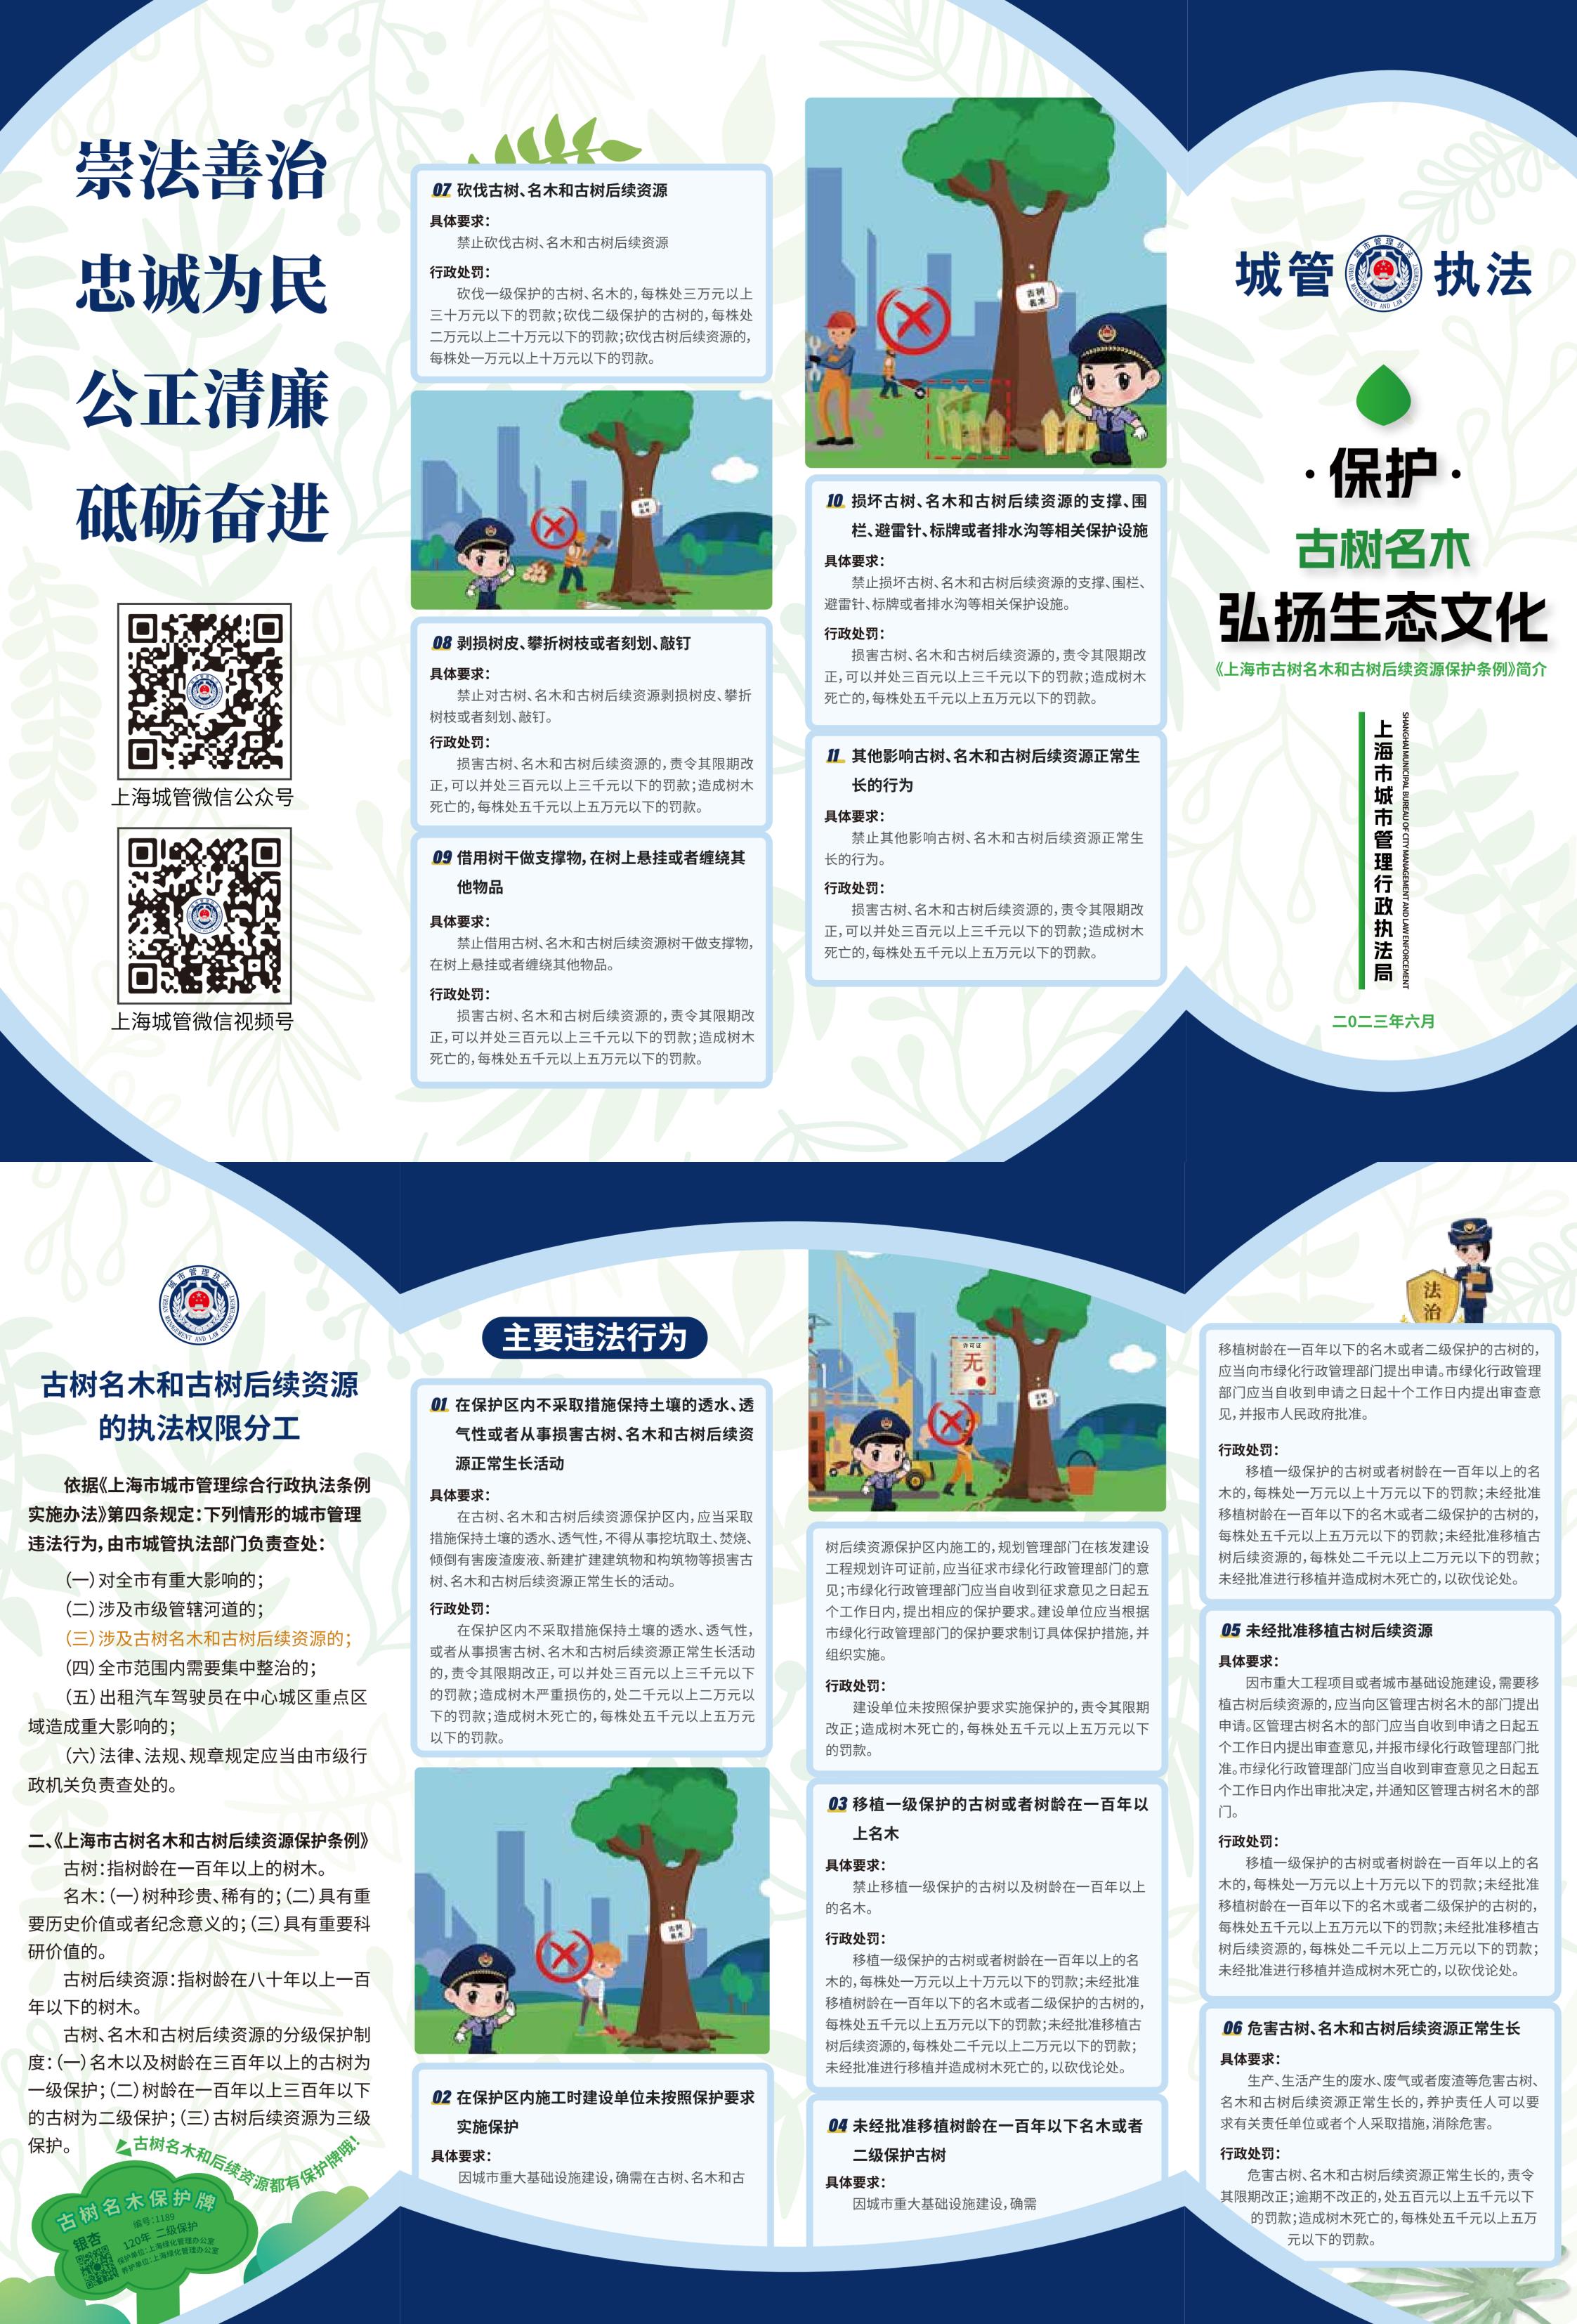 6上海市古树名木和古树后续资源保护条例.jpg